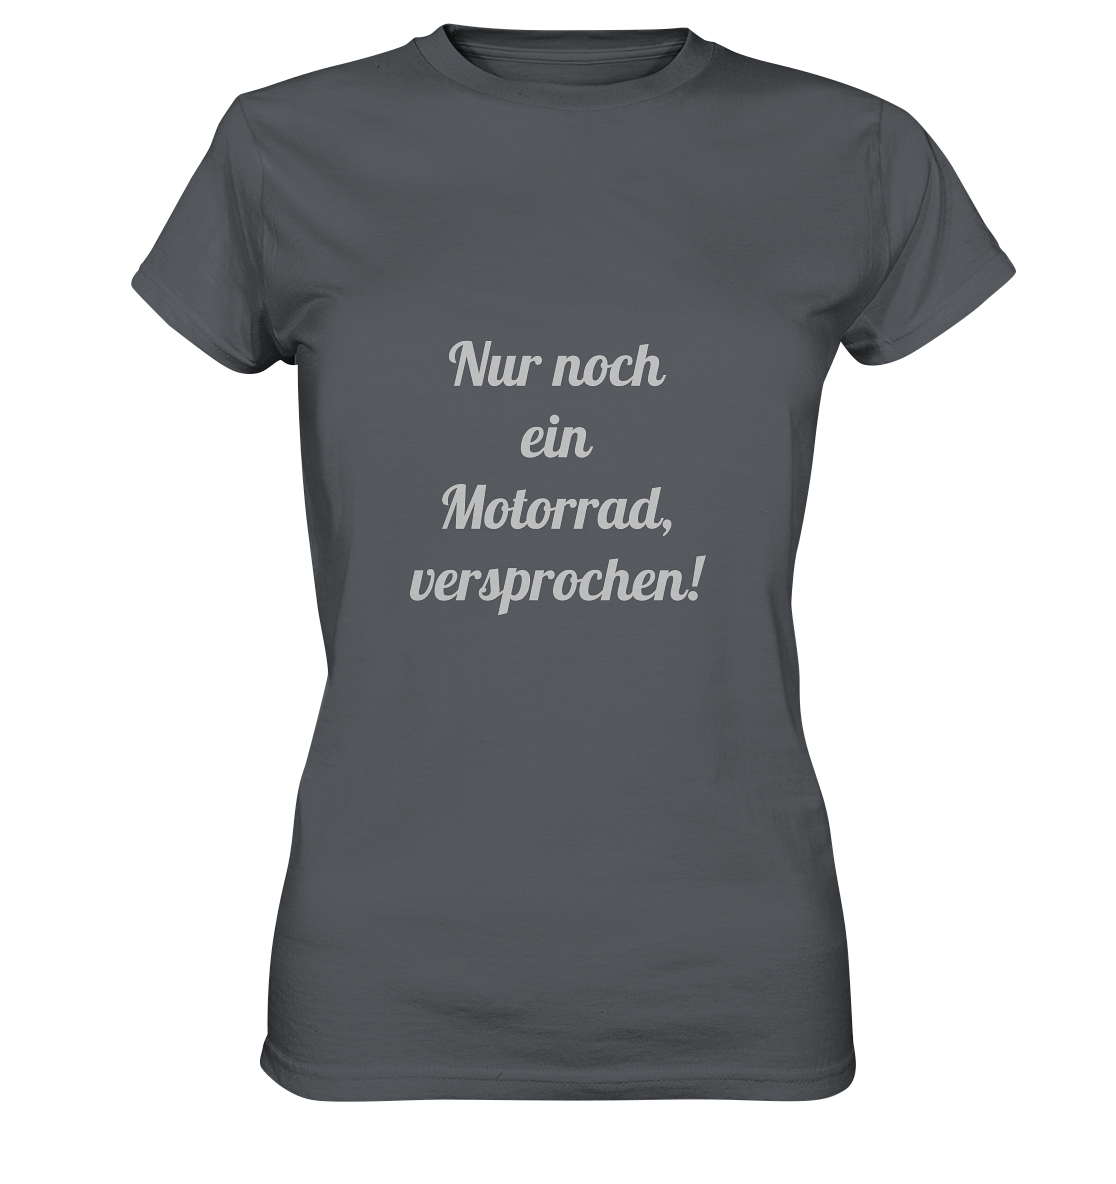 Damen-T-Shirt Rundhals-Ausschnitt, beidseitig bedruckt, vorn "Nur noch ein Motorrad - versprochen!" hinten crossed fingers, grau